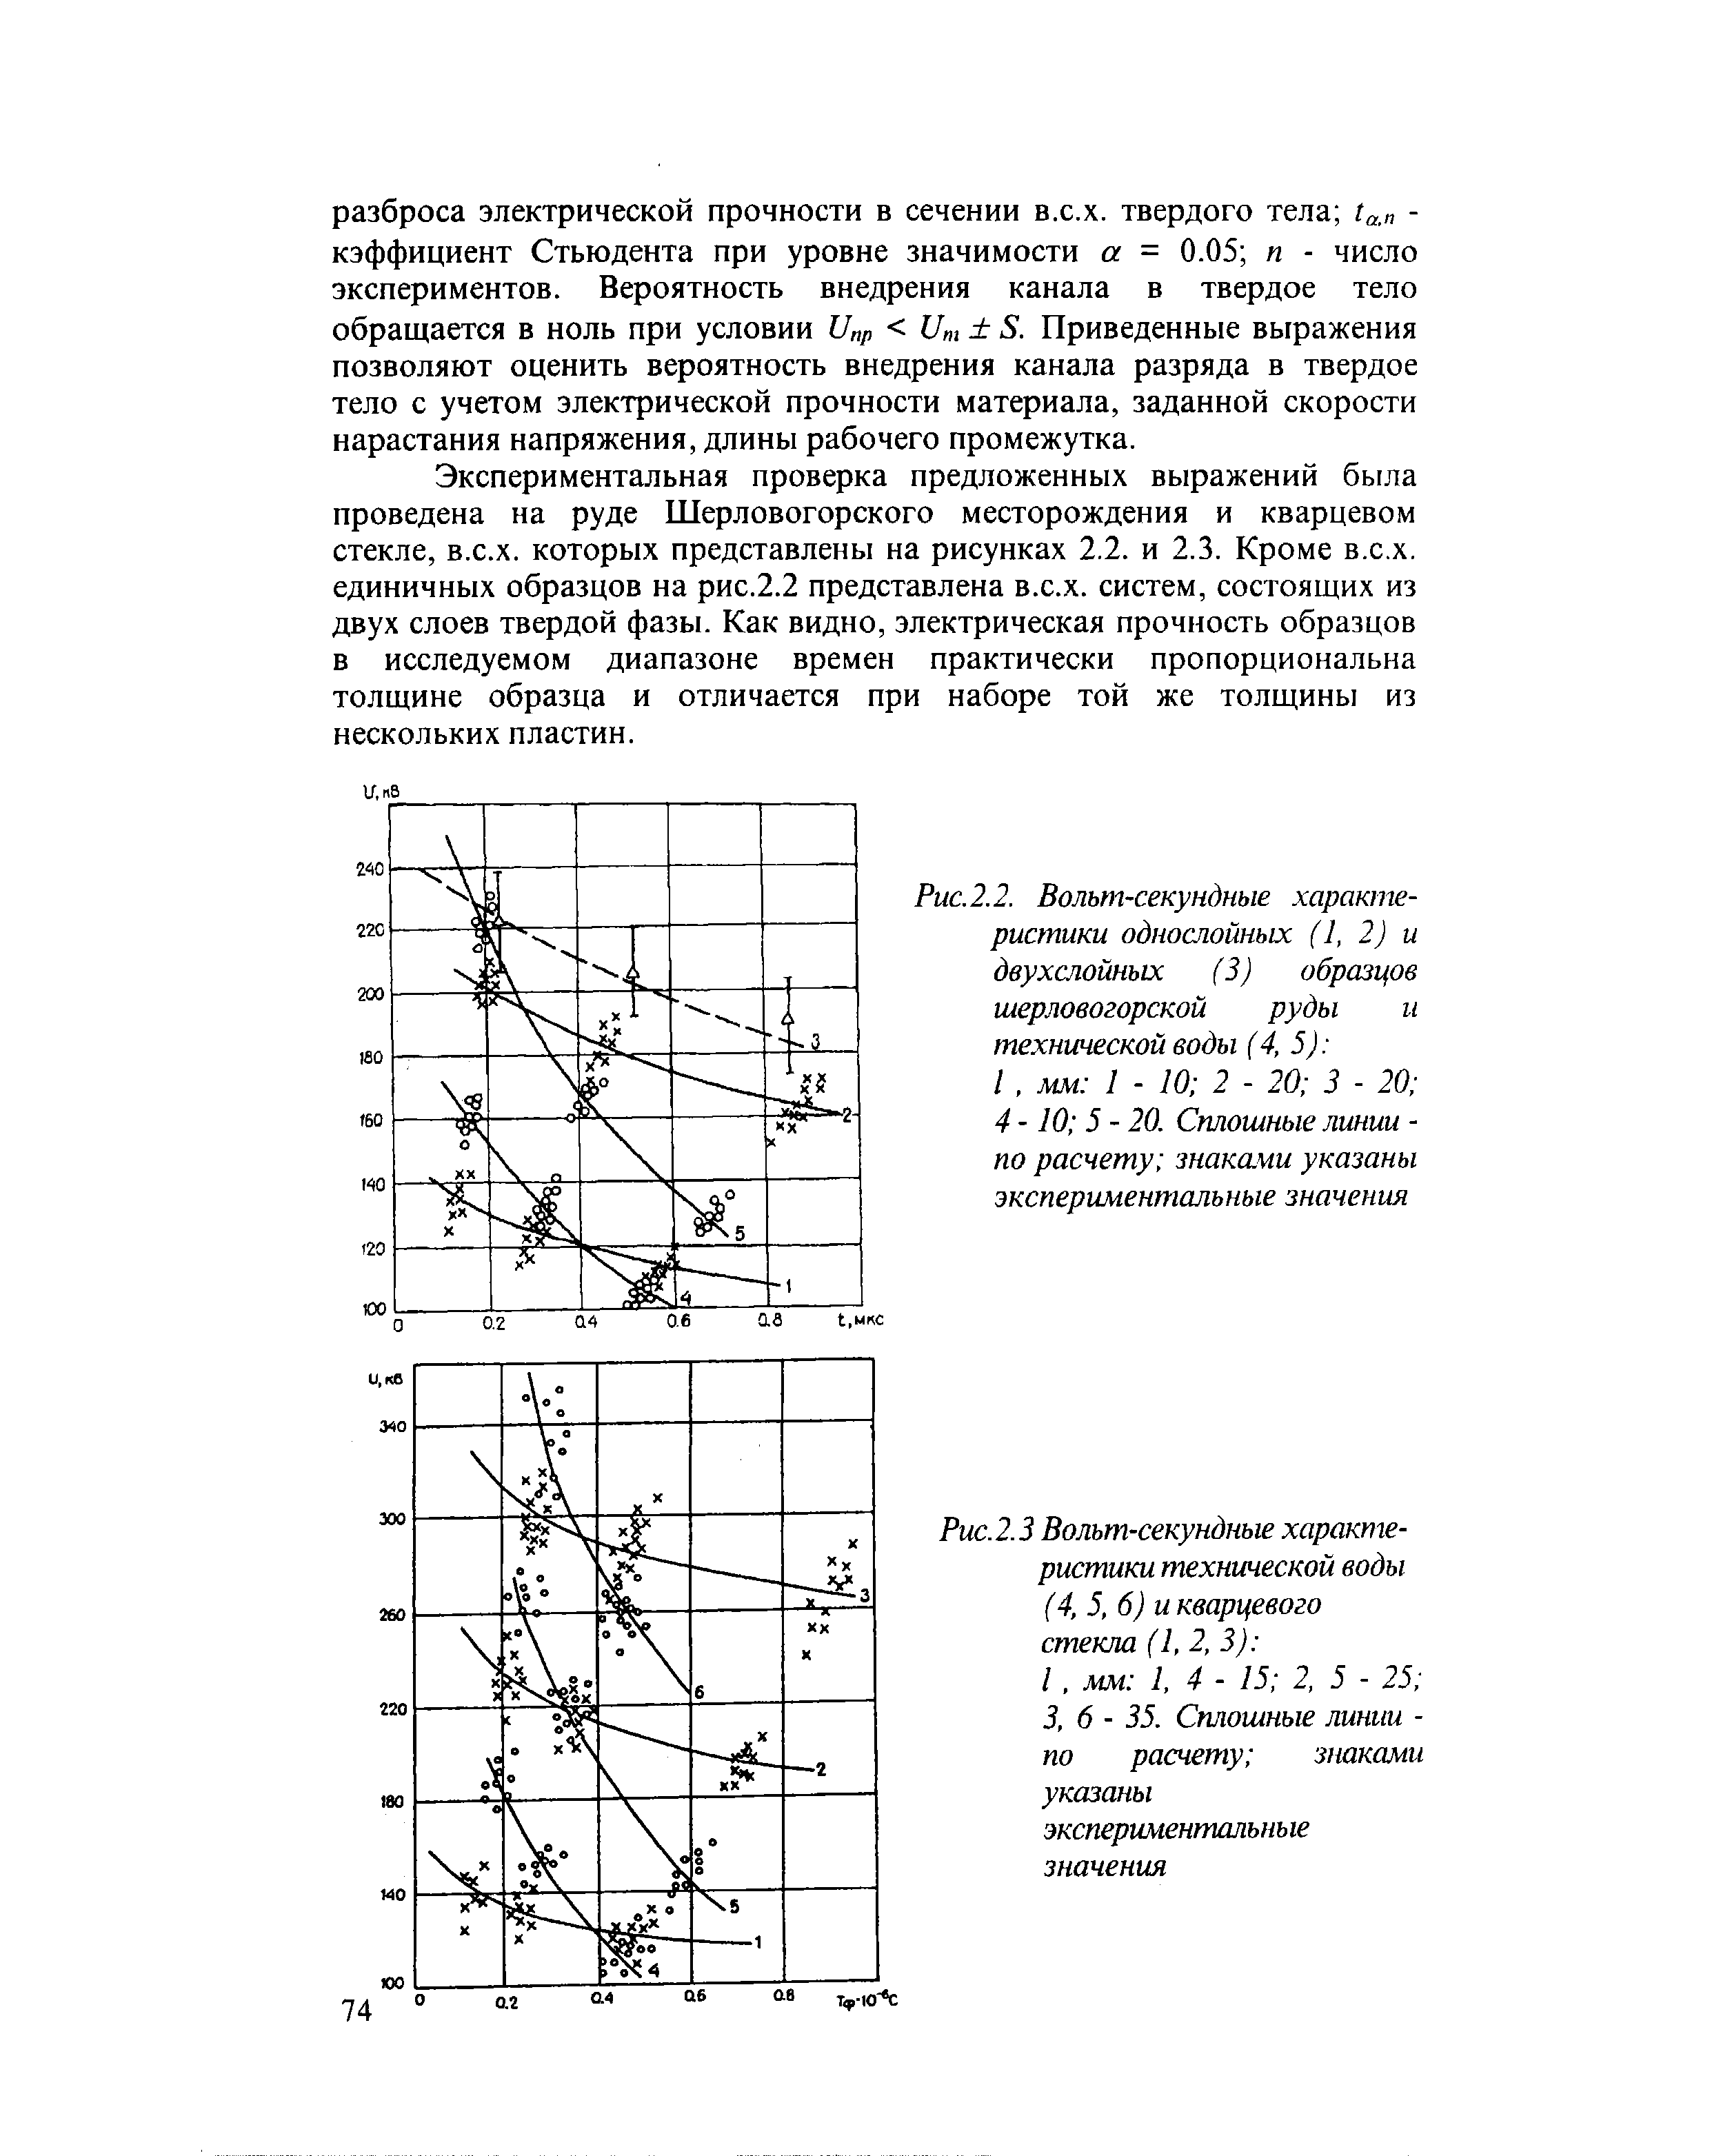 Рис.2.2. Вольт-секундные характеристики однослойных (1, 2) и двухслойных (3) образцов шерловогорской руды и технической воды (4, 5) 
